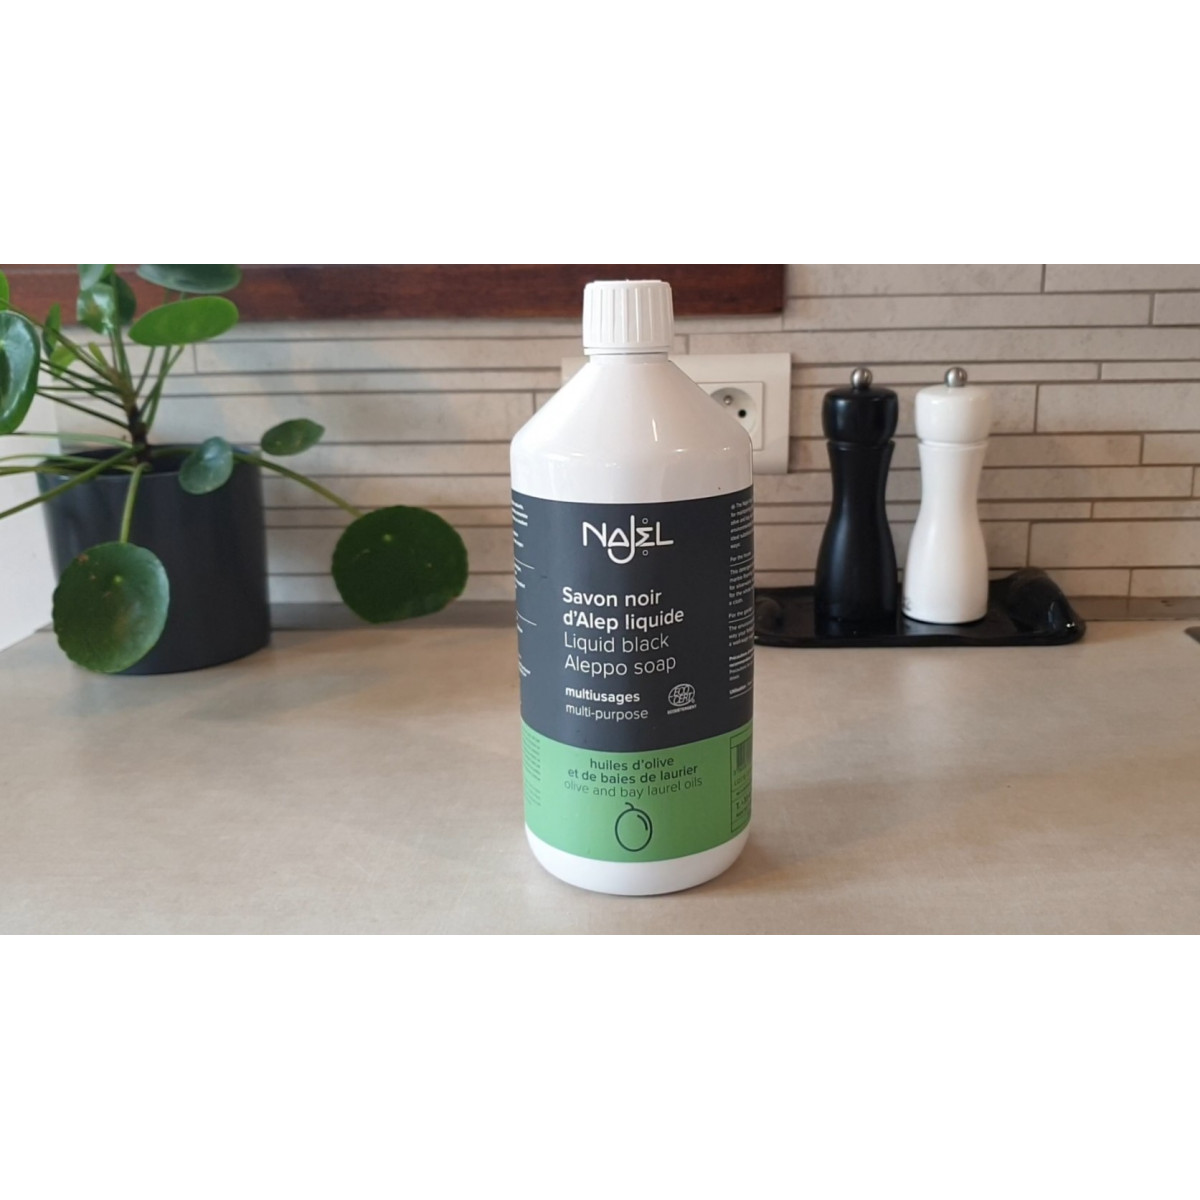 Lessive liquide au savon d'Alep certifiée Ecodétergent - 2 L